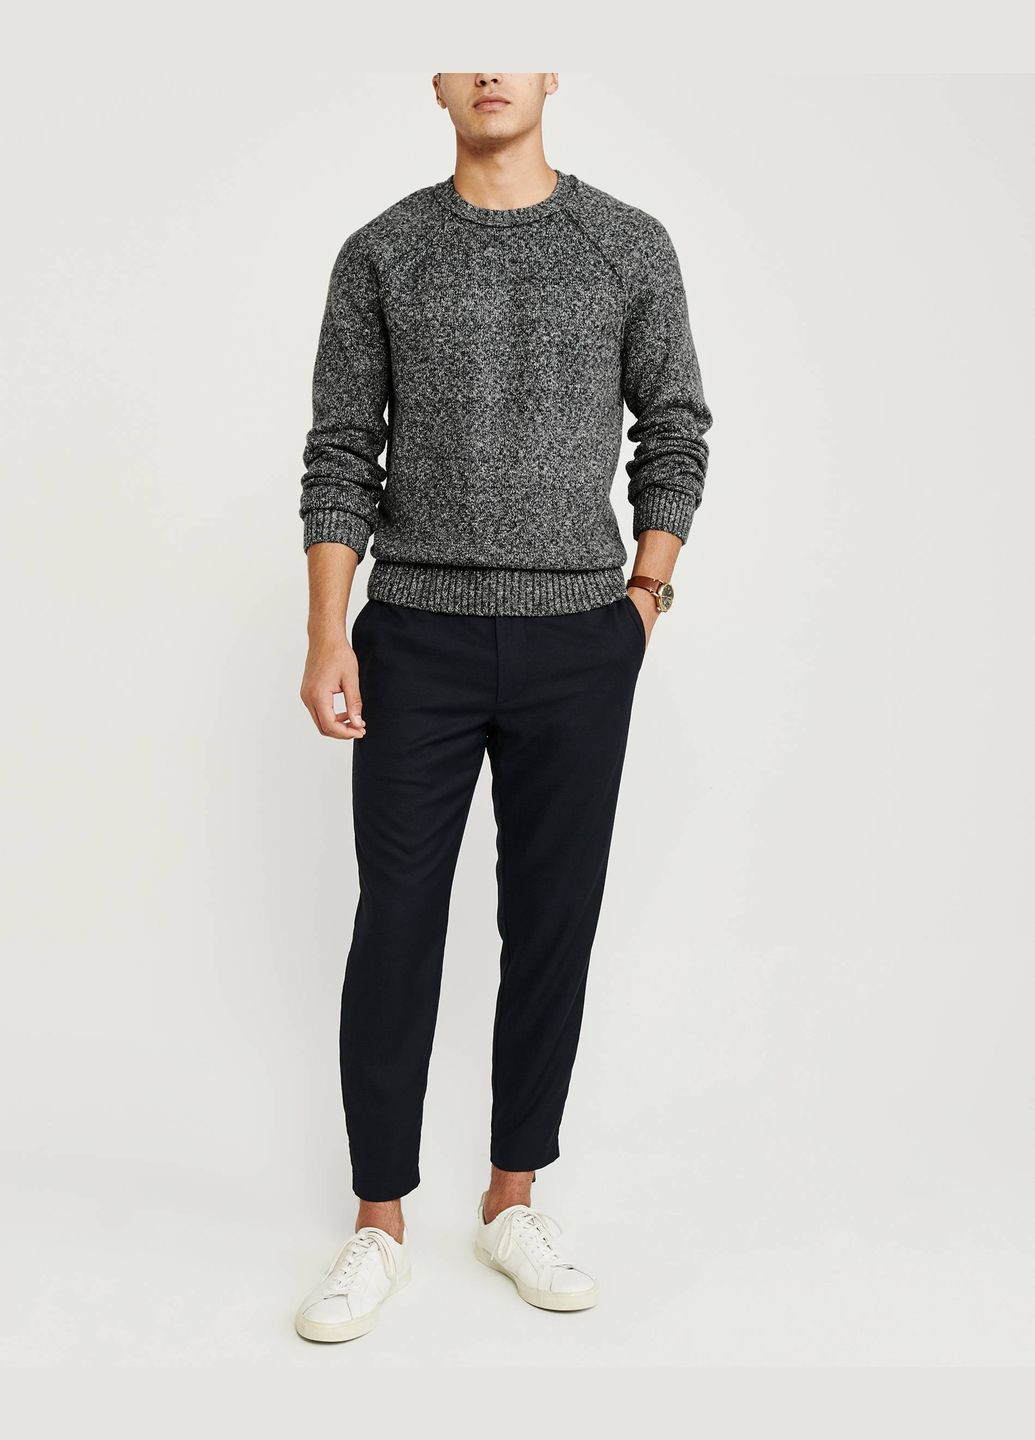 Темно-серый демисезонный свитер мужской - свитер af6160m Abercrombie & Fitch